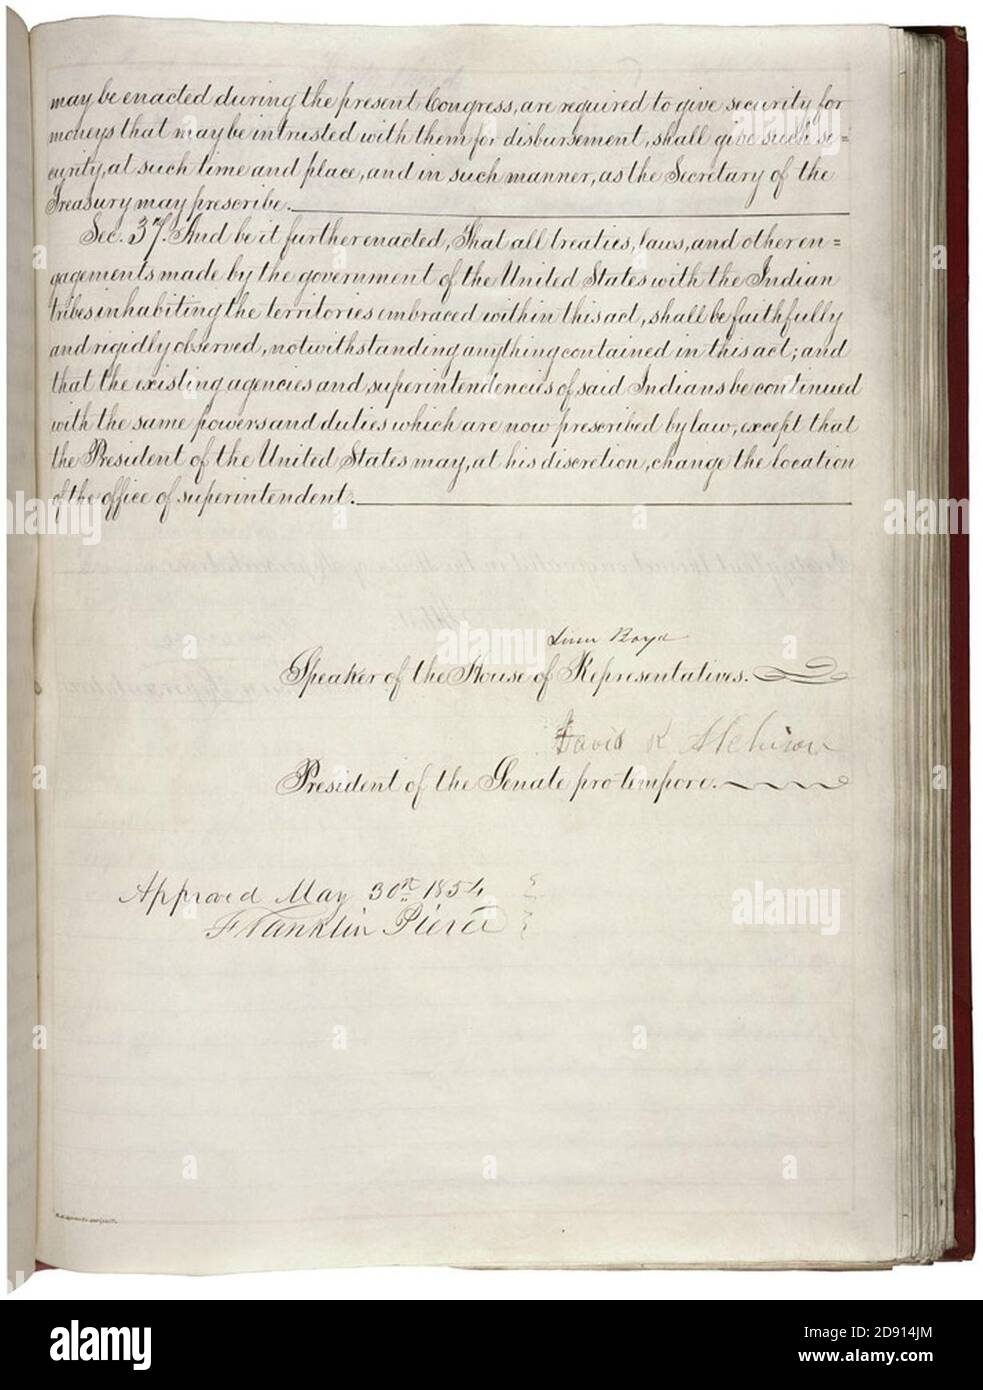 Kansas Nebraska Act von 1854, Seite 3 von 3 (5669921240). Stockfoto